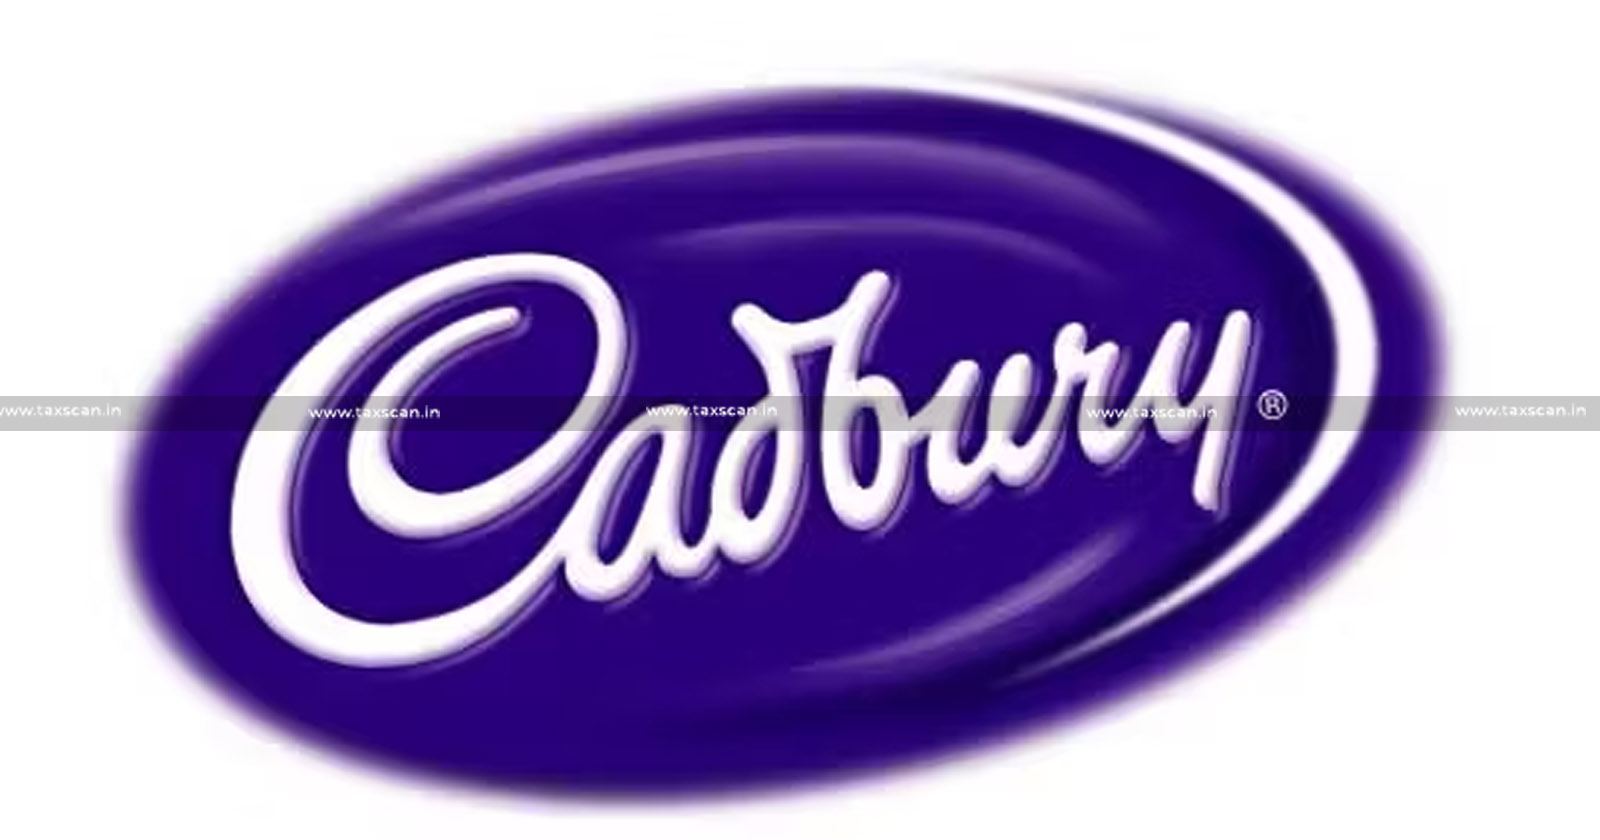 CESTAT- Excise Rules - Cadbury India - TAXSCAN